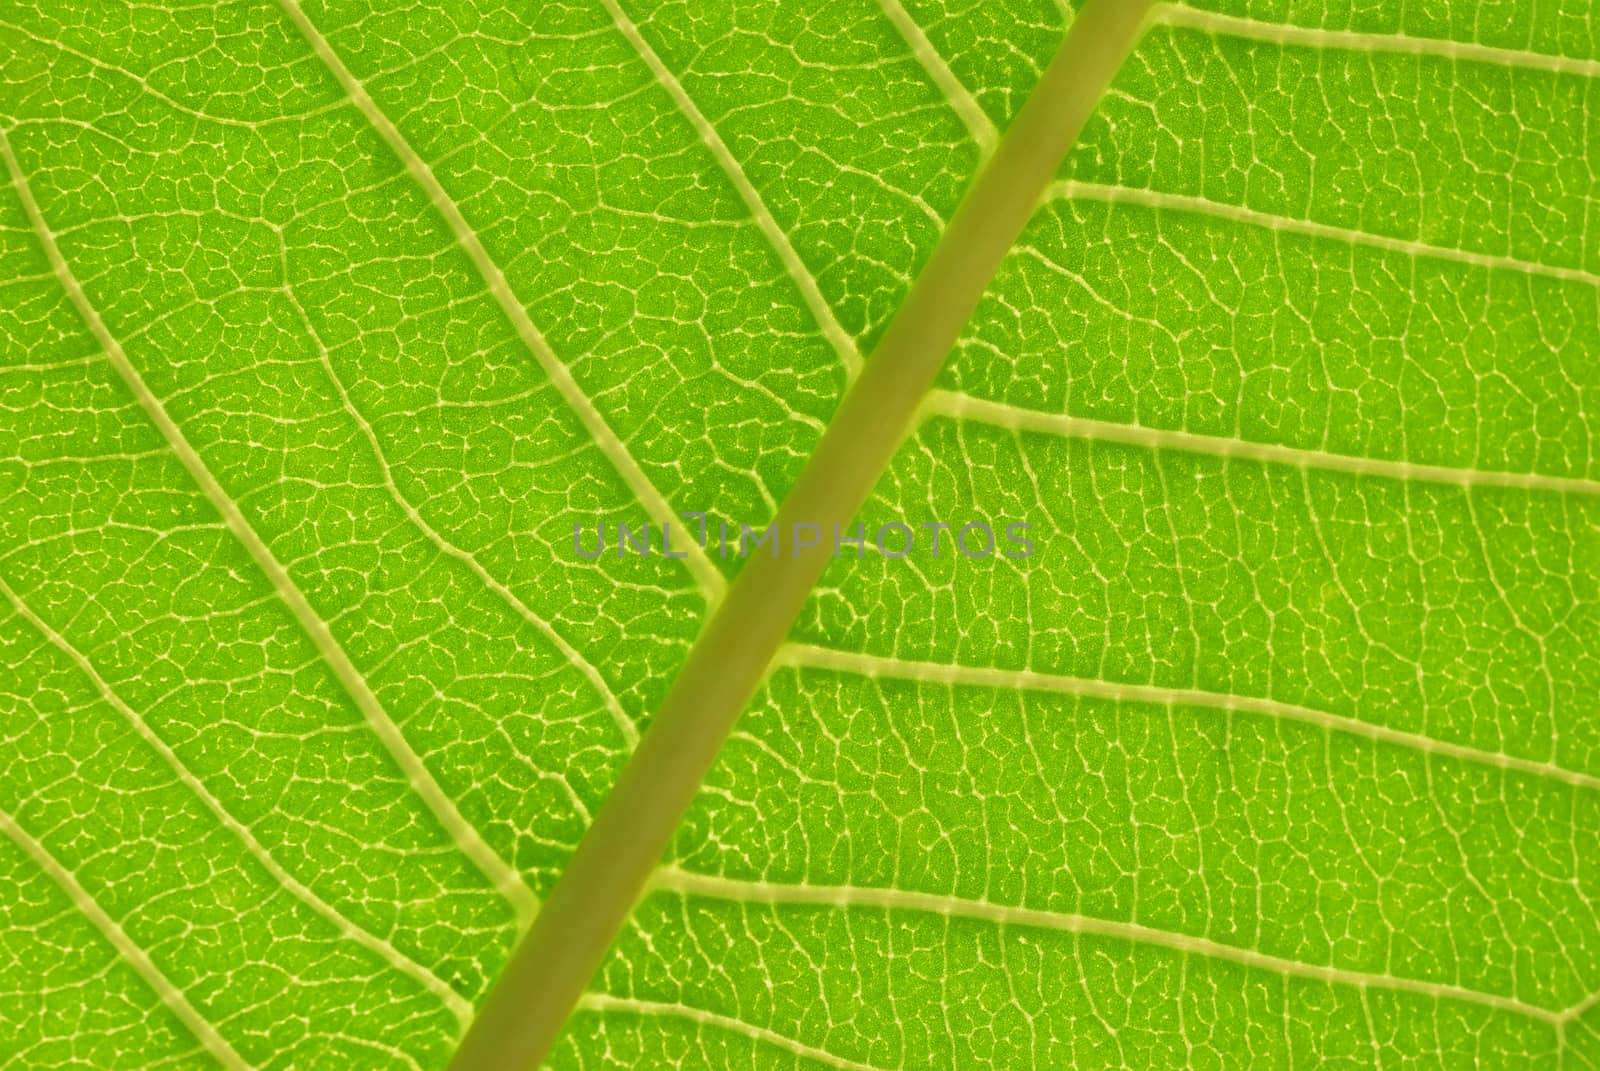 Close up photo of a backlit leaf showing nerves